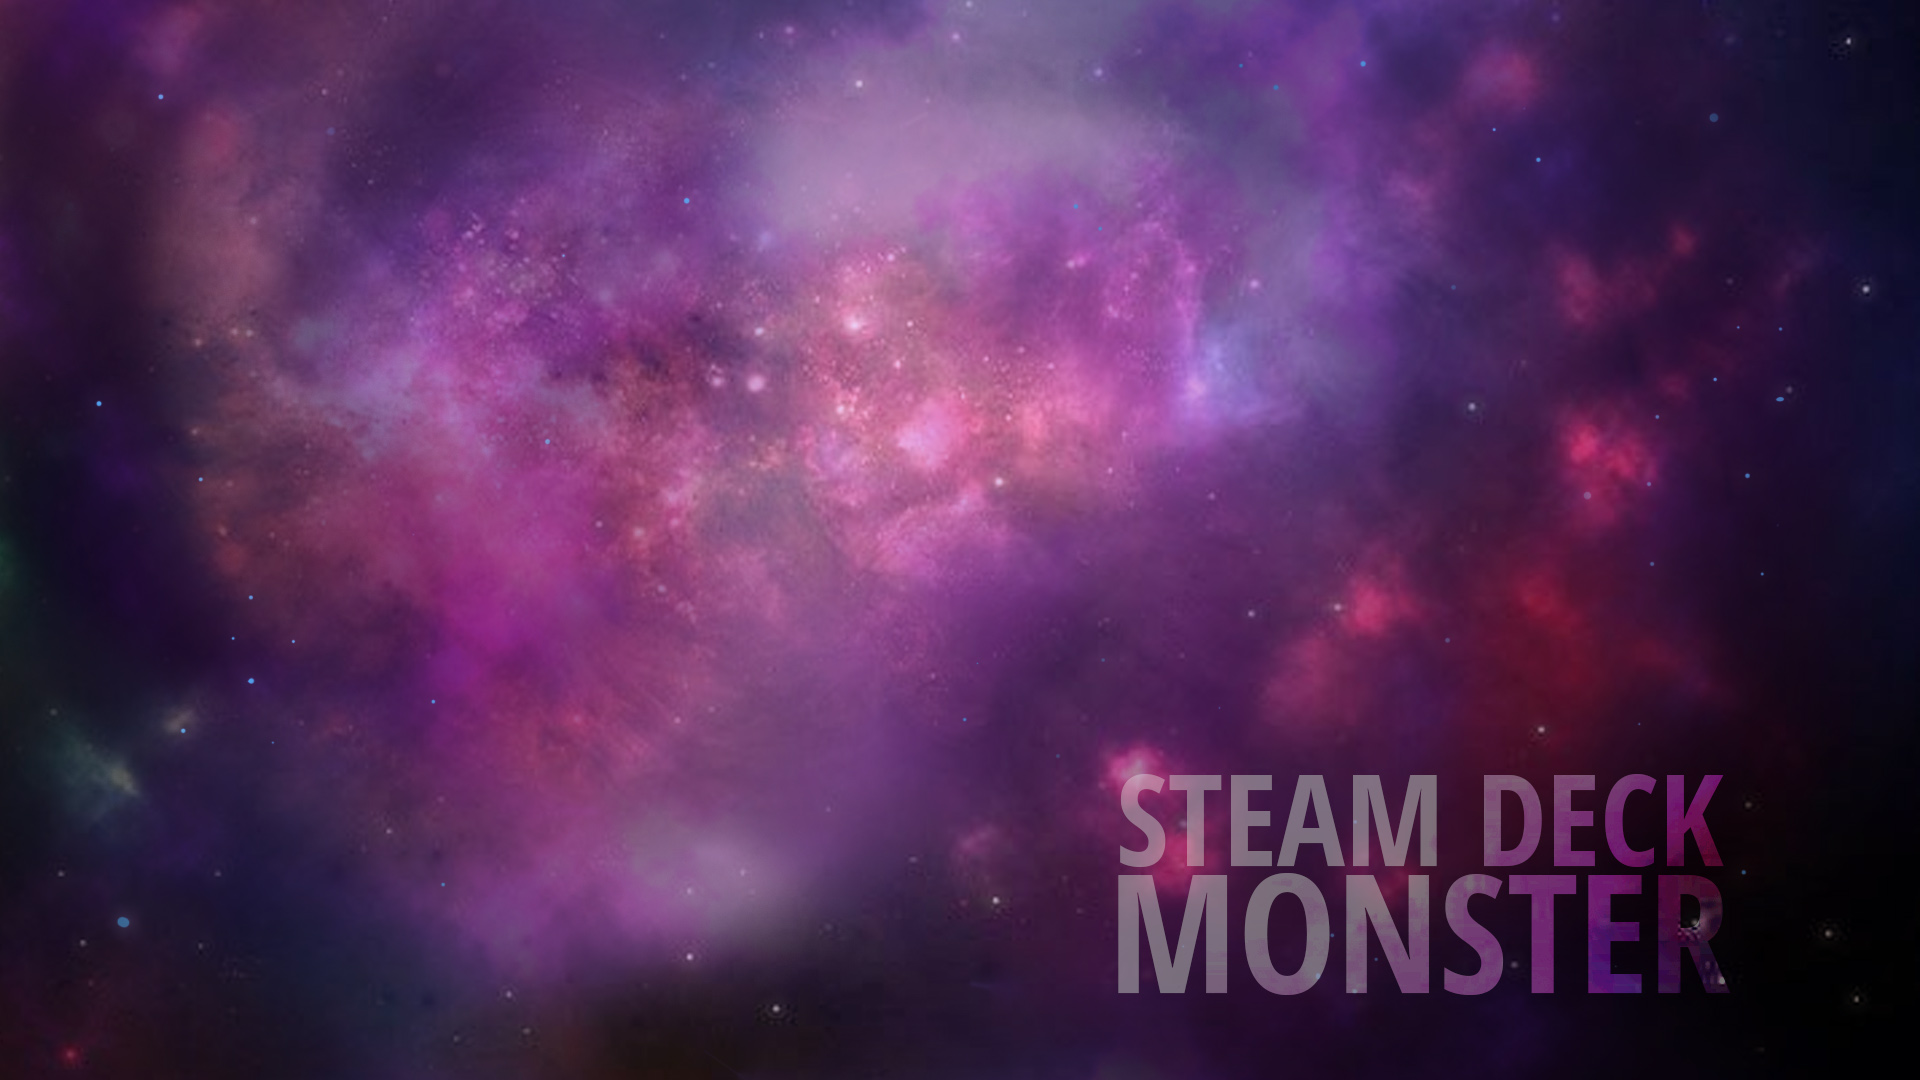 Trò chơi Steam Deck đầy hứa hẹn, hứa hẹn mang đến trải nghiệm chơi game tuyệt vời trên màn hình cảm ứng của bạn. Hãy xem hình ảnh liên quan để khám phá thêm về thế giới game Steam Deck đang chờ đón bạn!